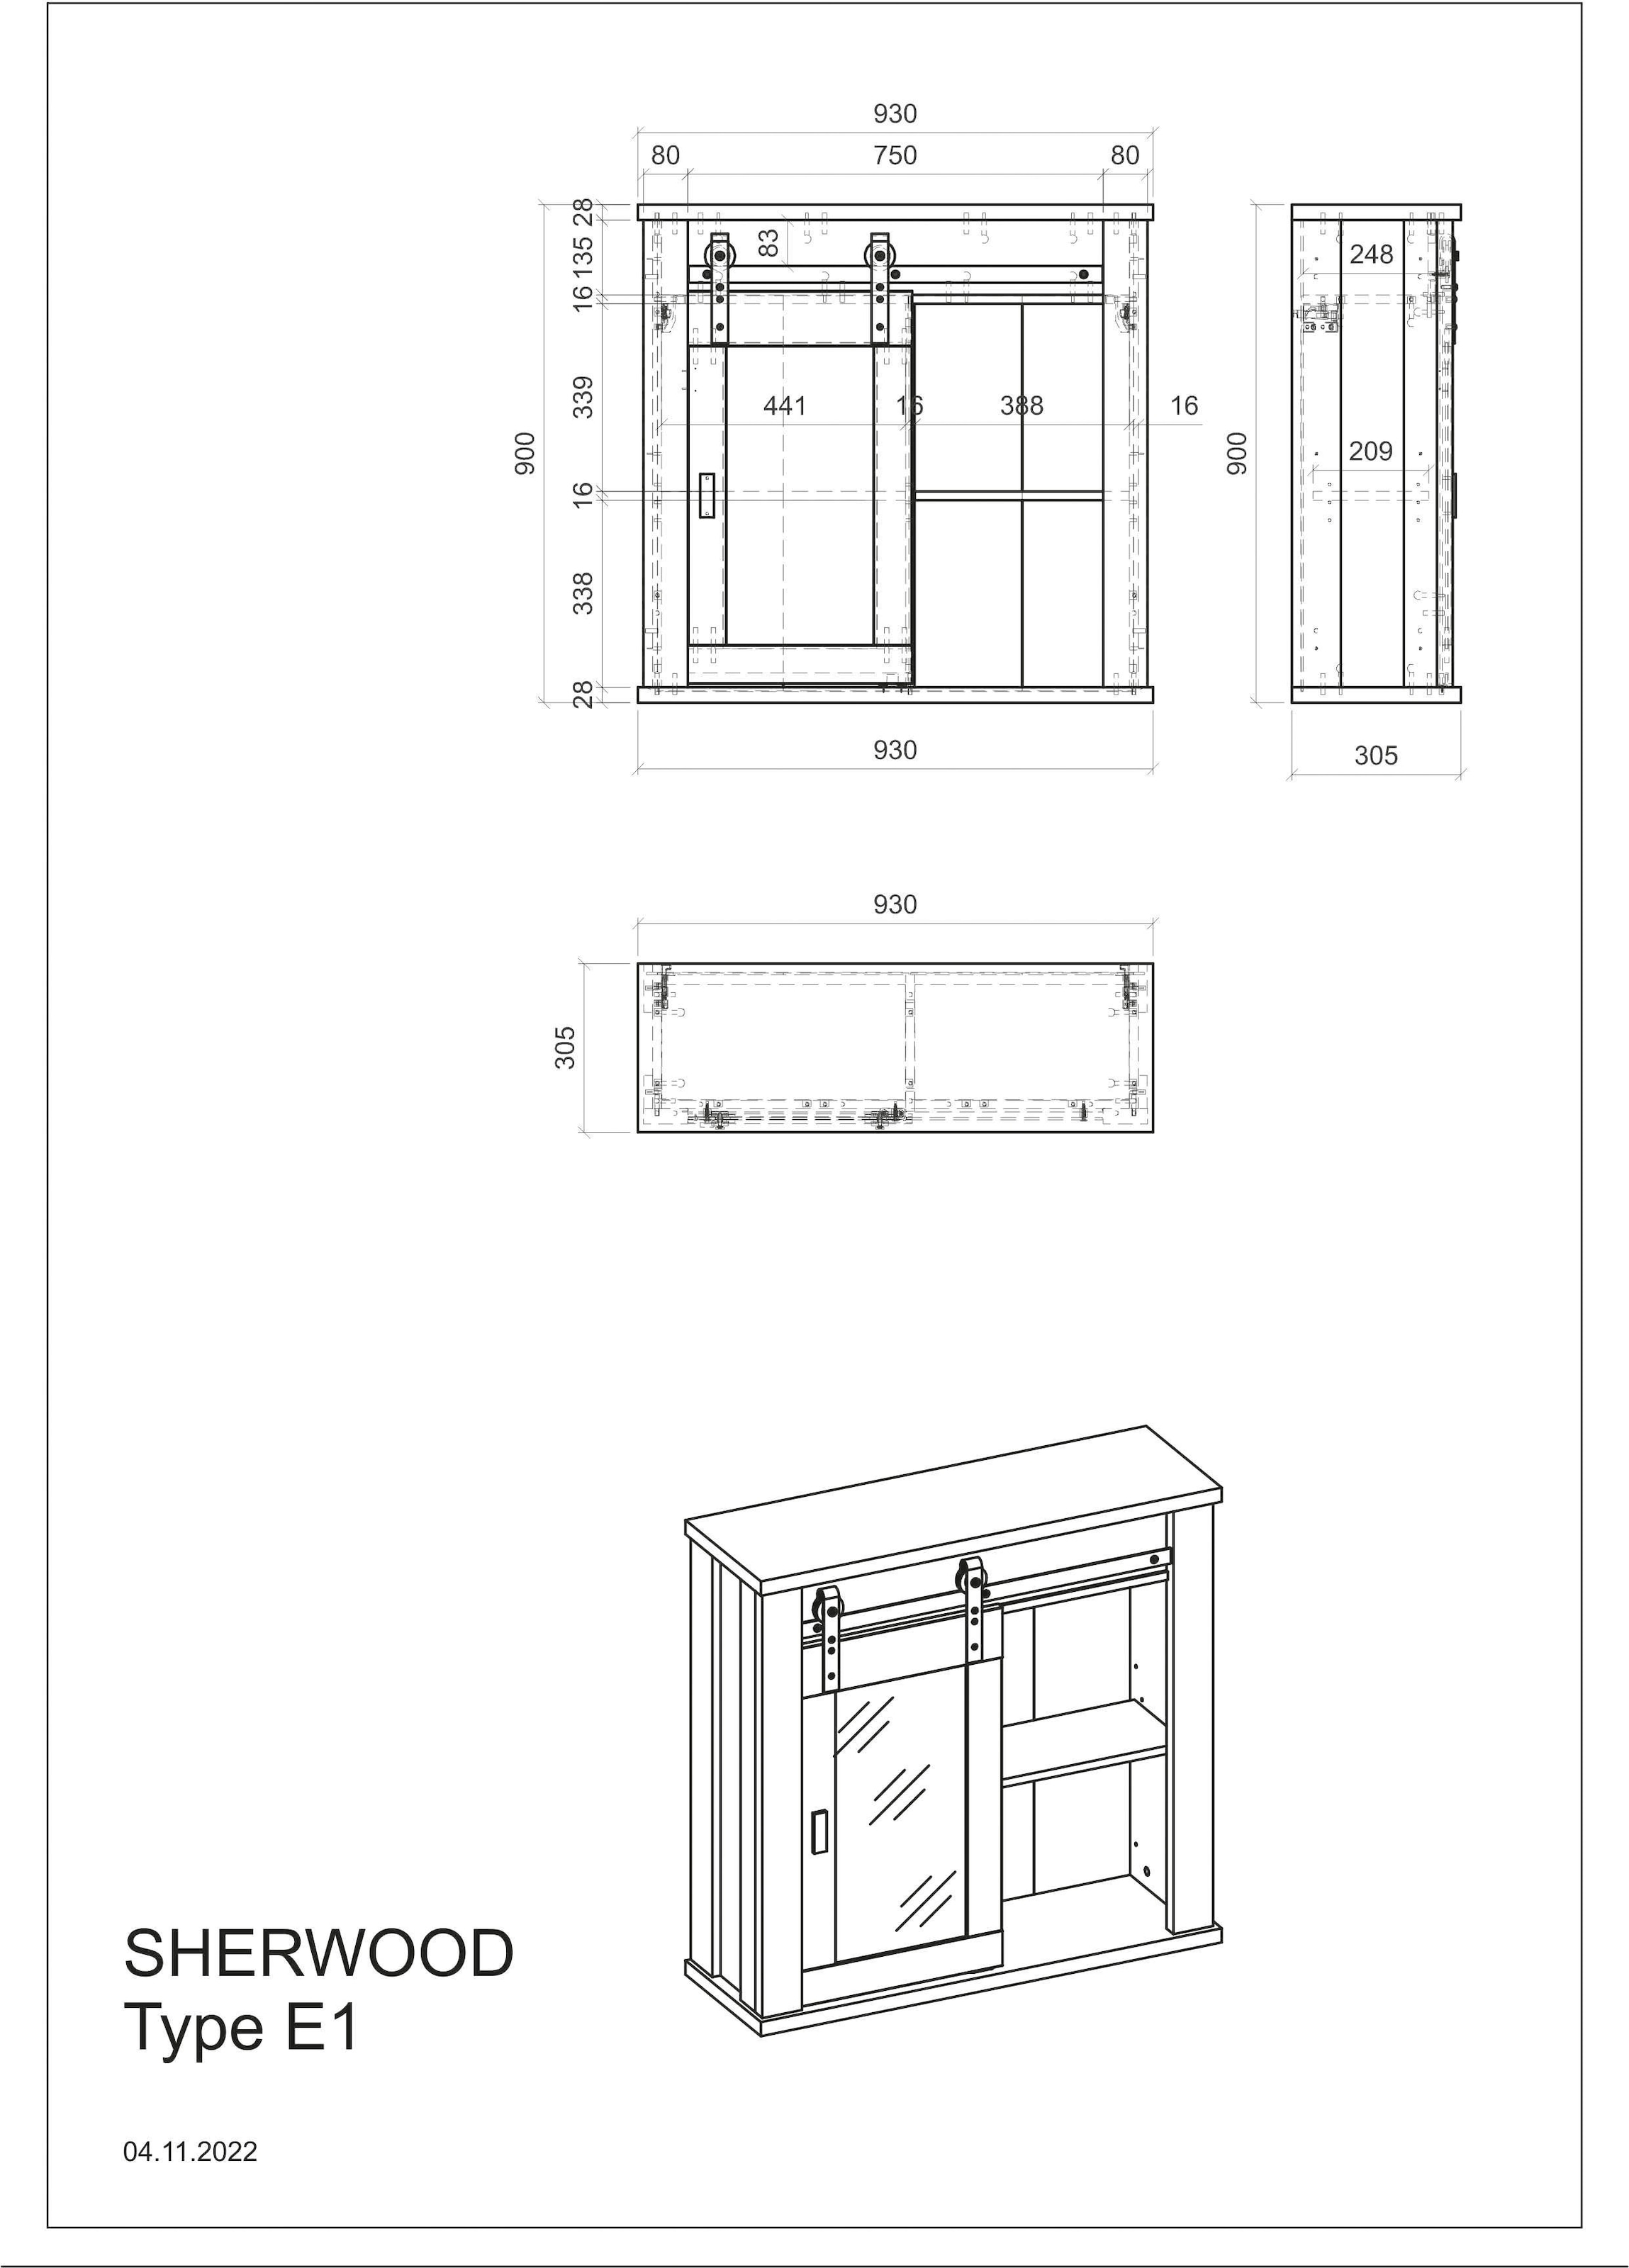 Home affaire Hängeschrank »Sherwood«, mit Scheunentorbeschlag aus Metall, Höhe  90 cm bequem kaufen